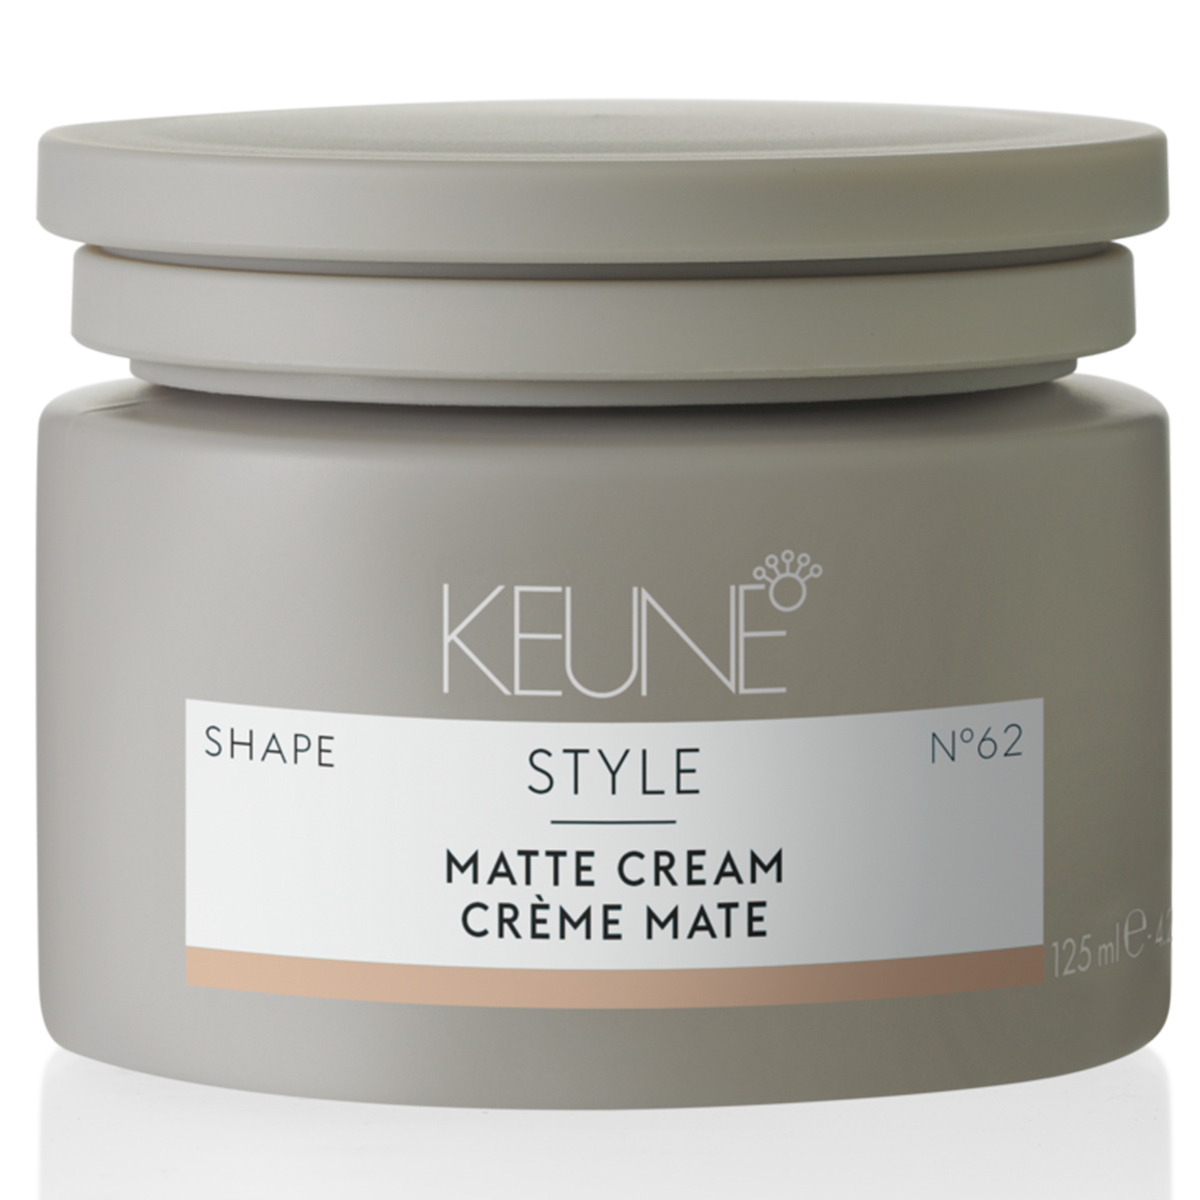 Keune Матирующий крем средней фиксации Matte Cream №62, 125 мл (Keune, Style)